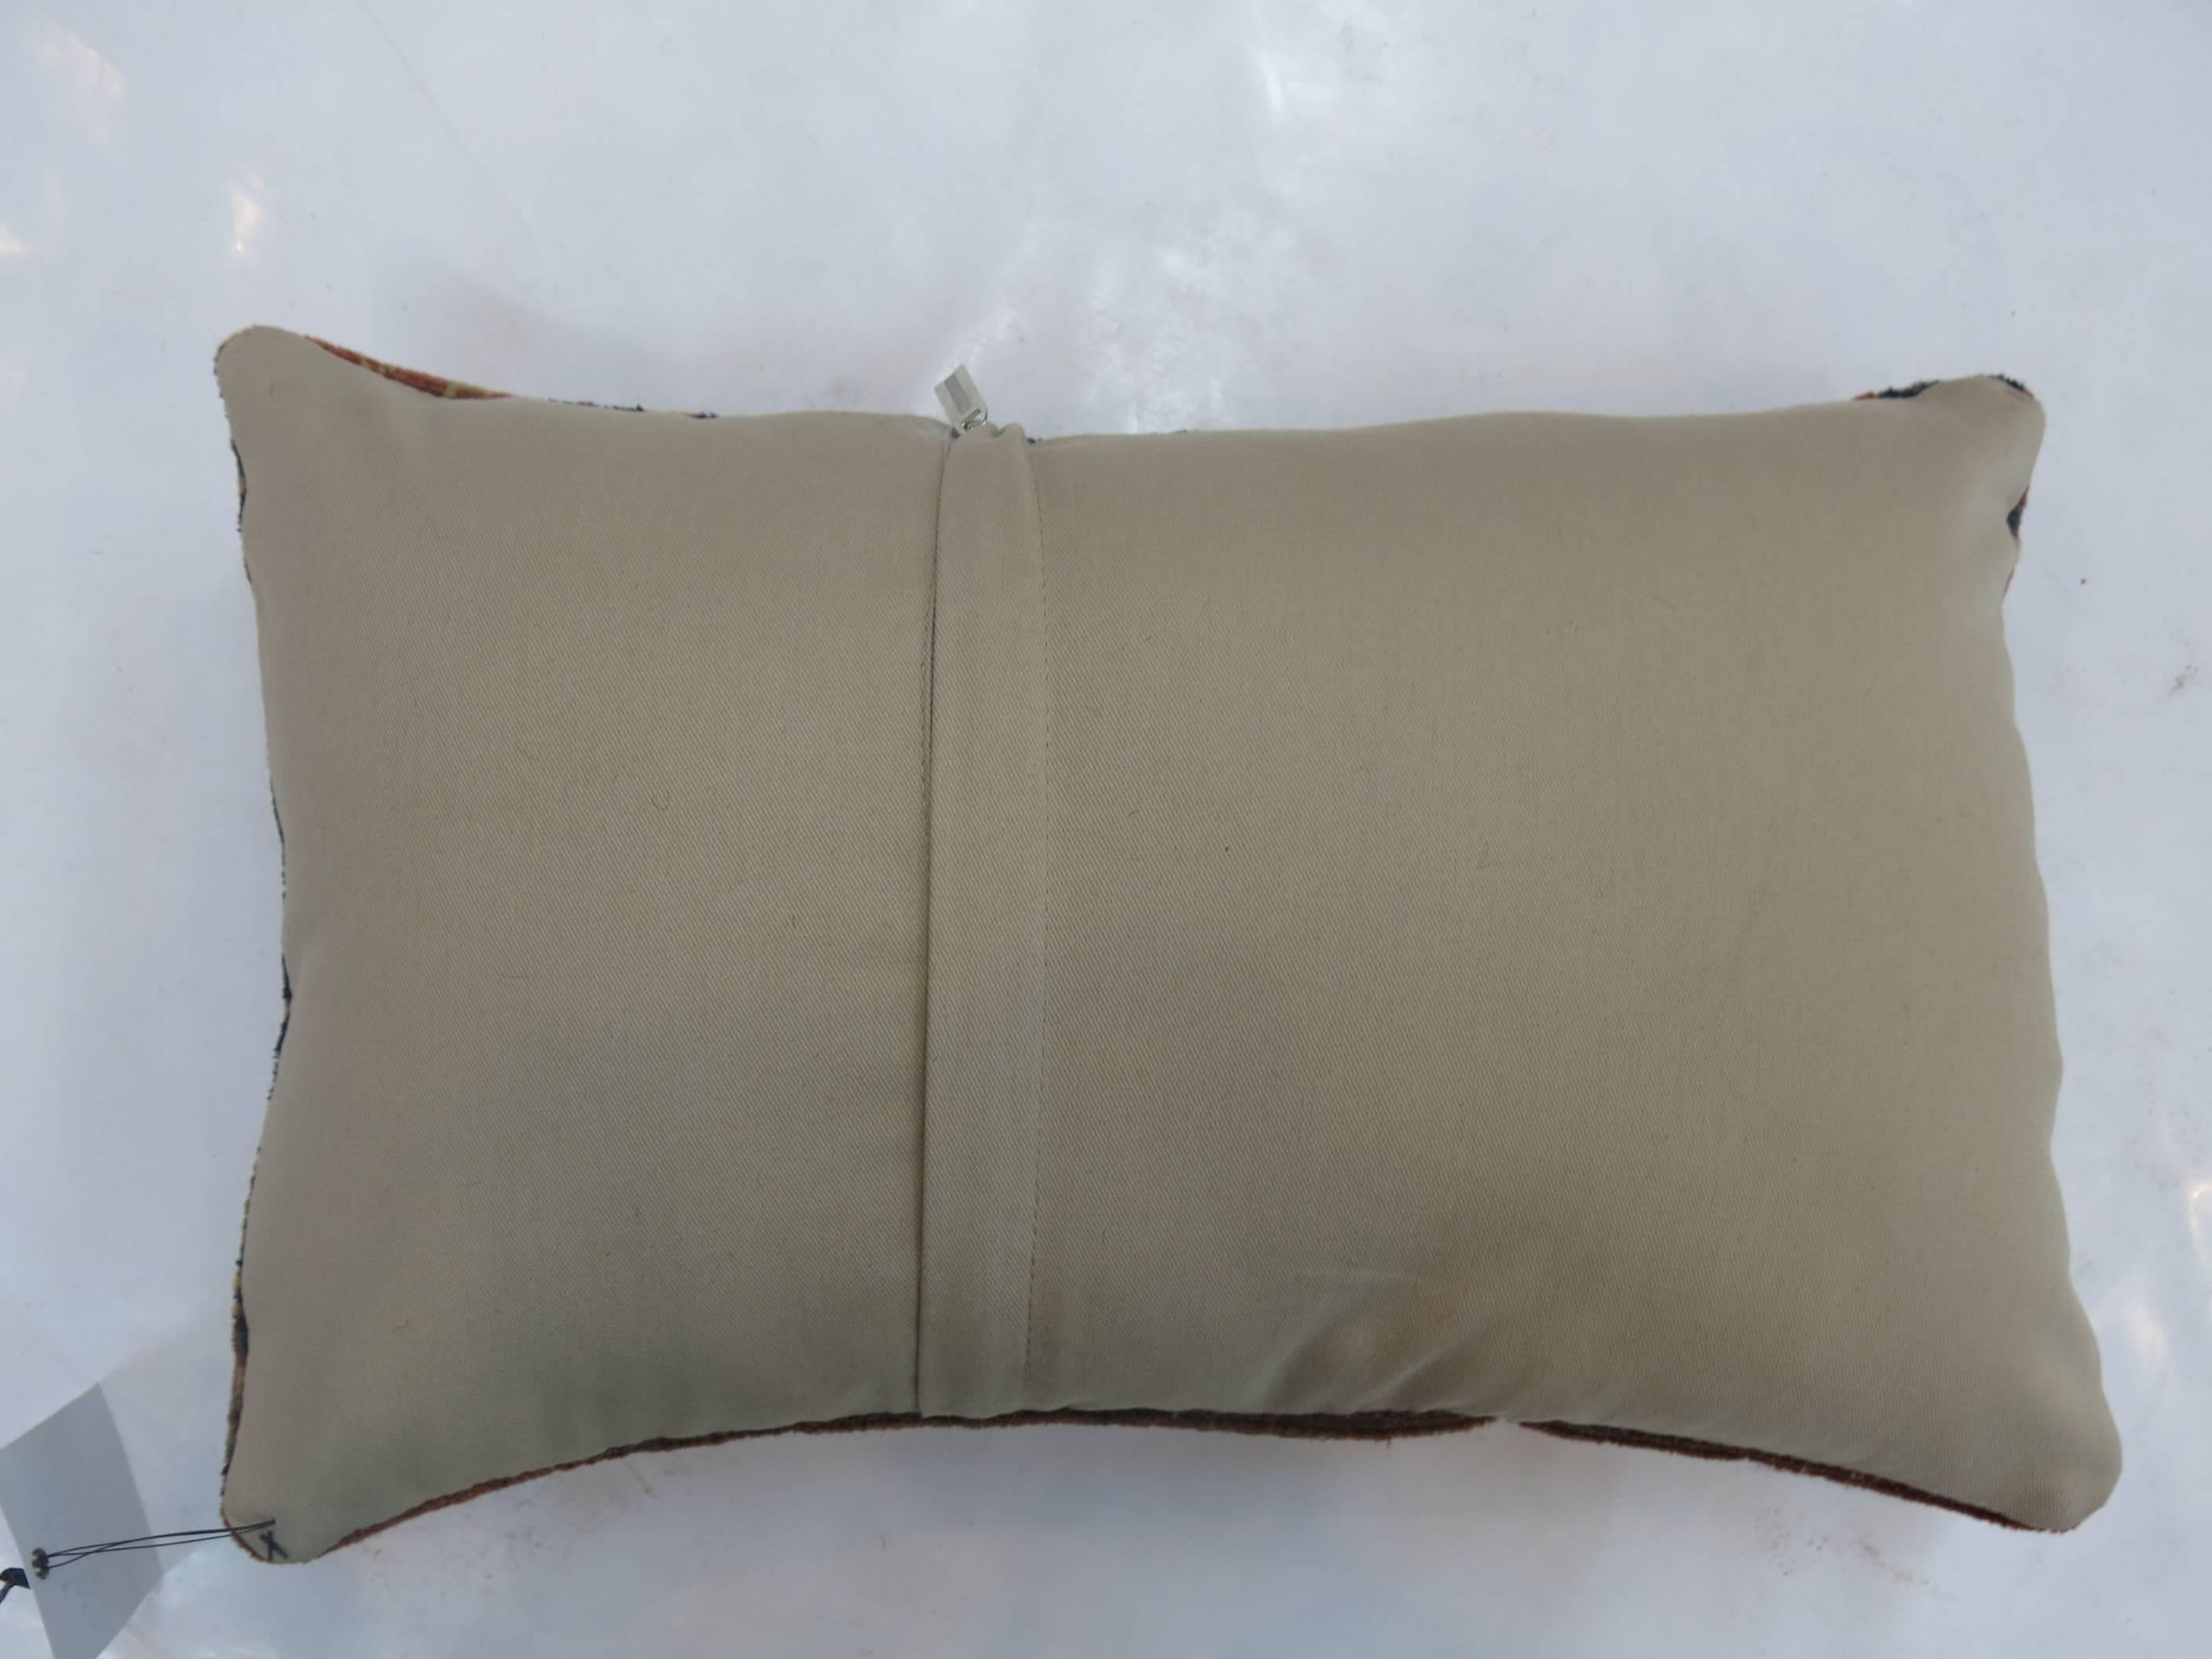 Un oreiller fabriqué à partir d'un tapis indien Agra du 19e siècle. Fermeture à glissière prévue au cas où vous souhaiteriez utiliser l'insert de votre choix.

Mesures : 1'3